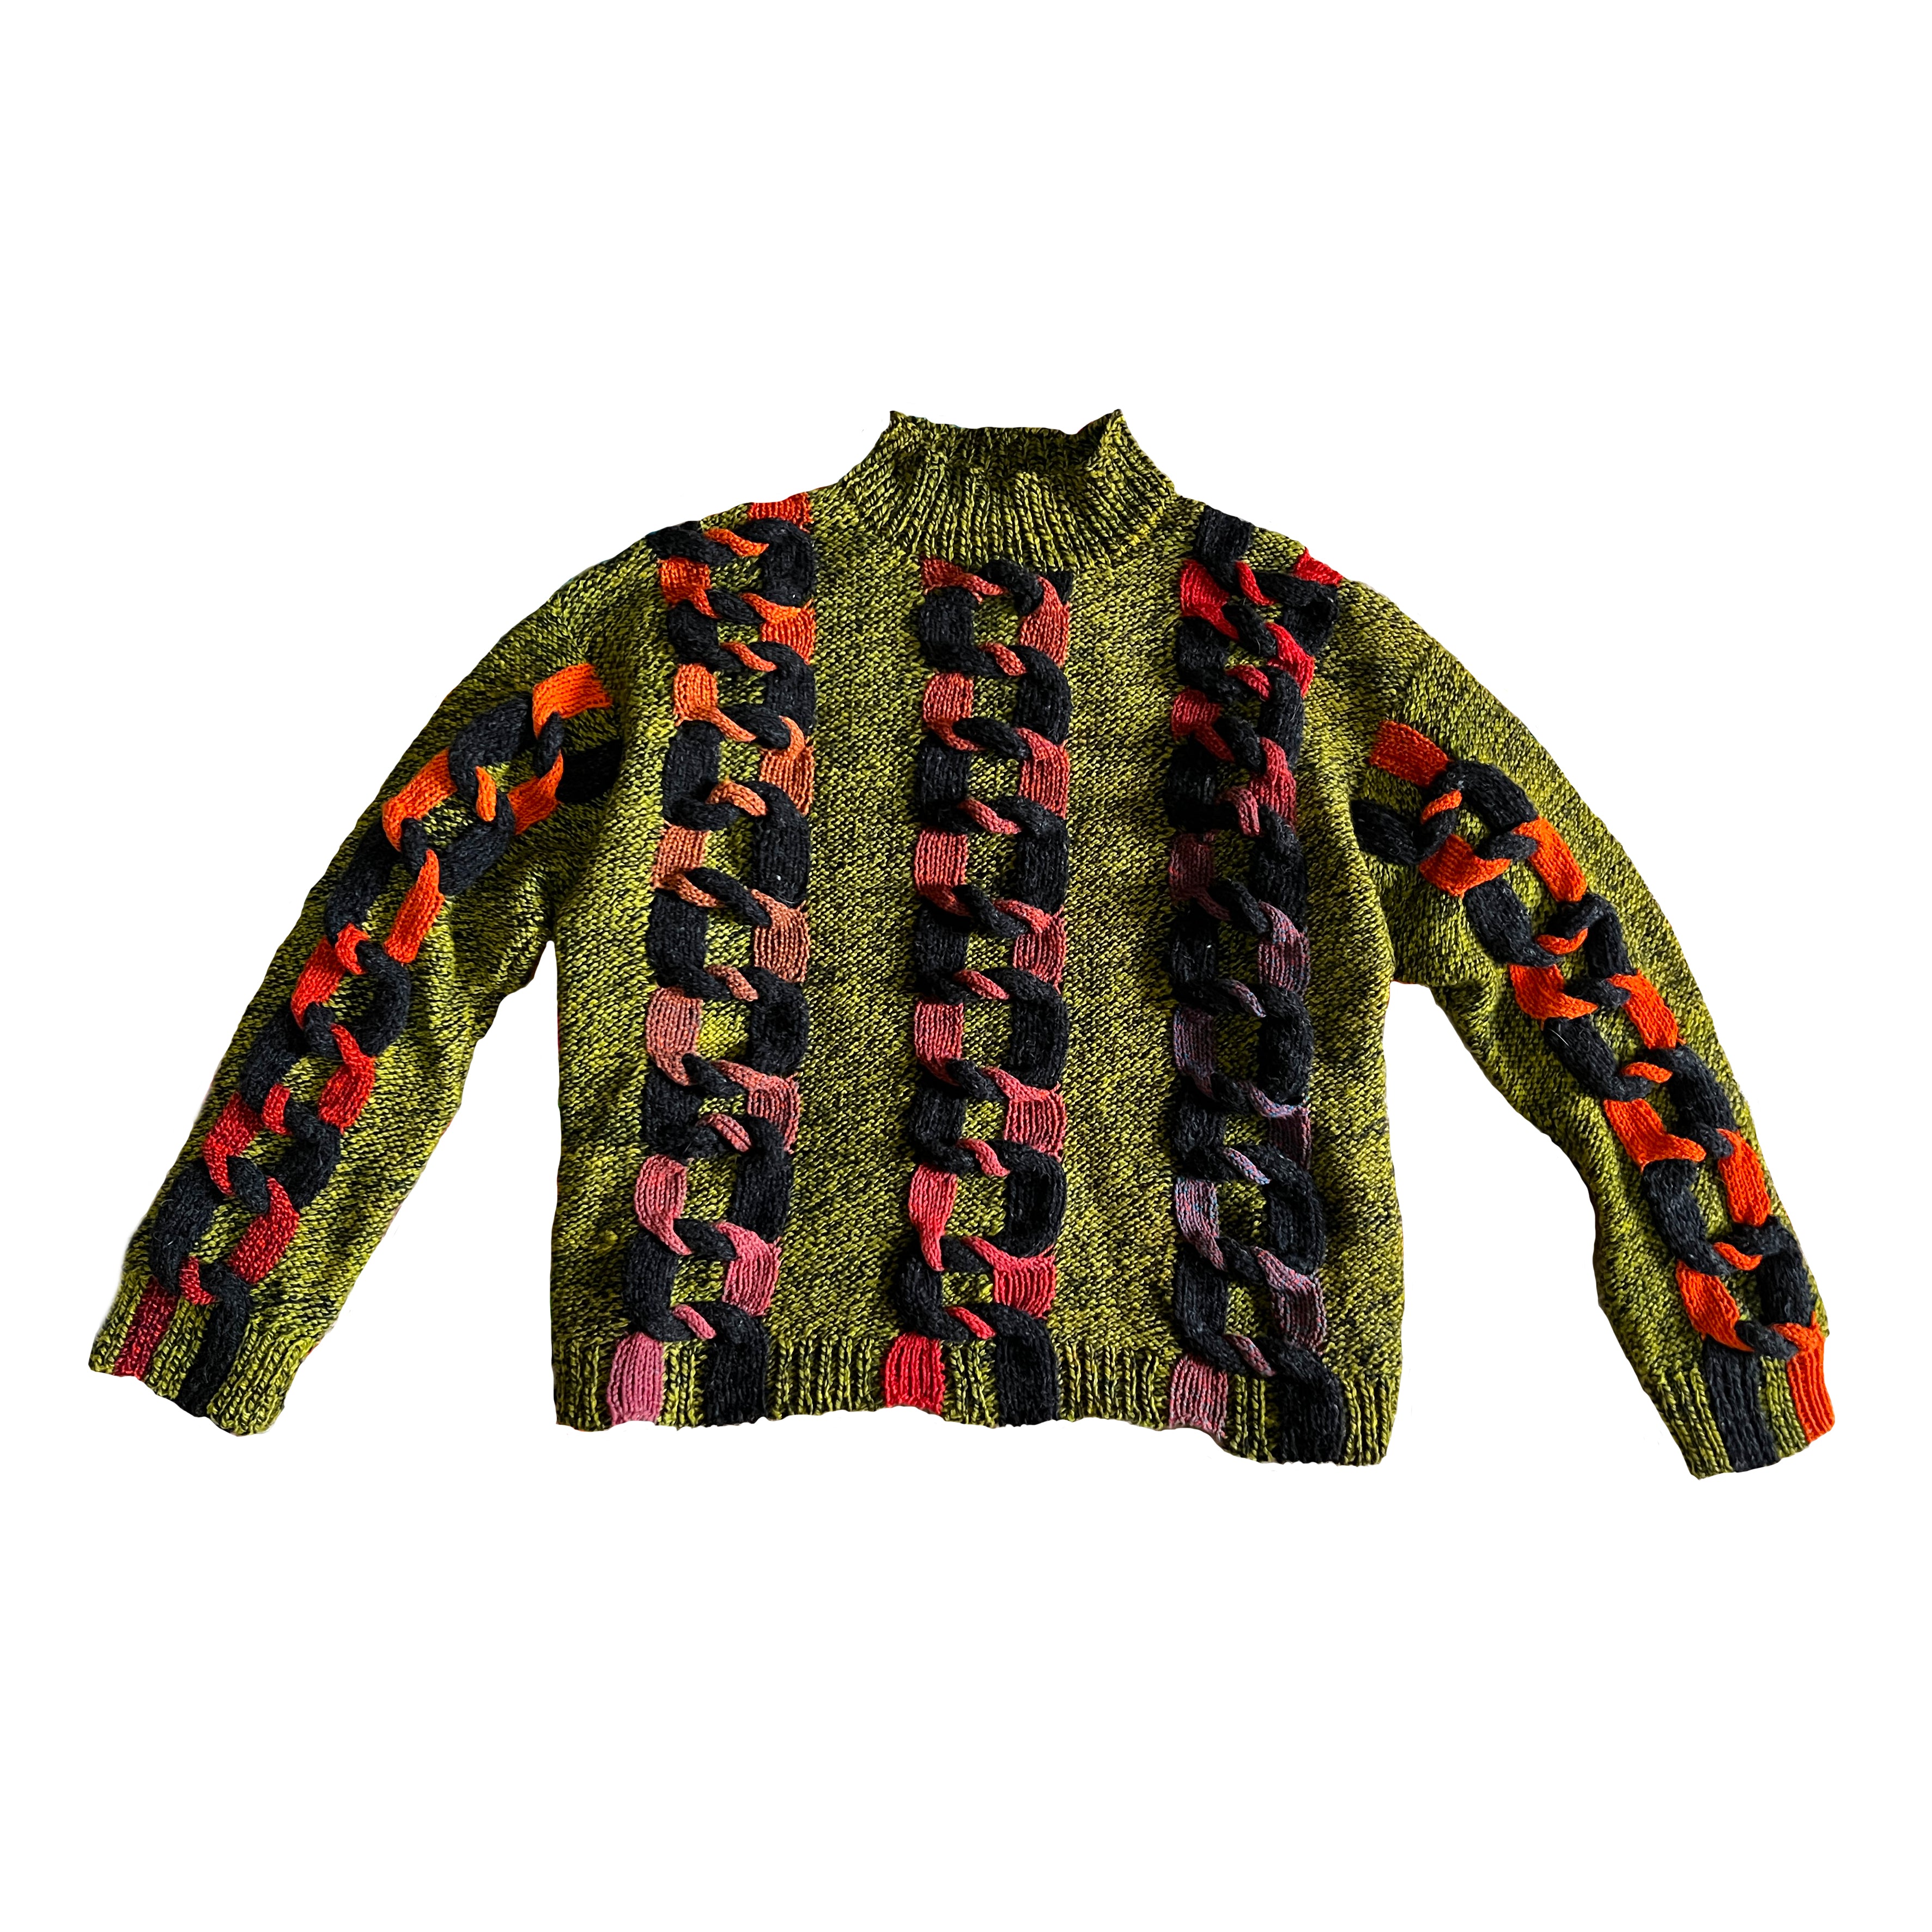 Chains Sweater Pattern – DEGEN